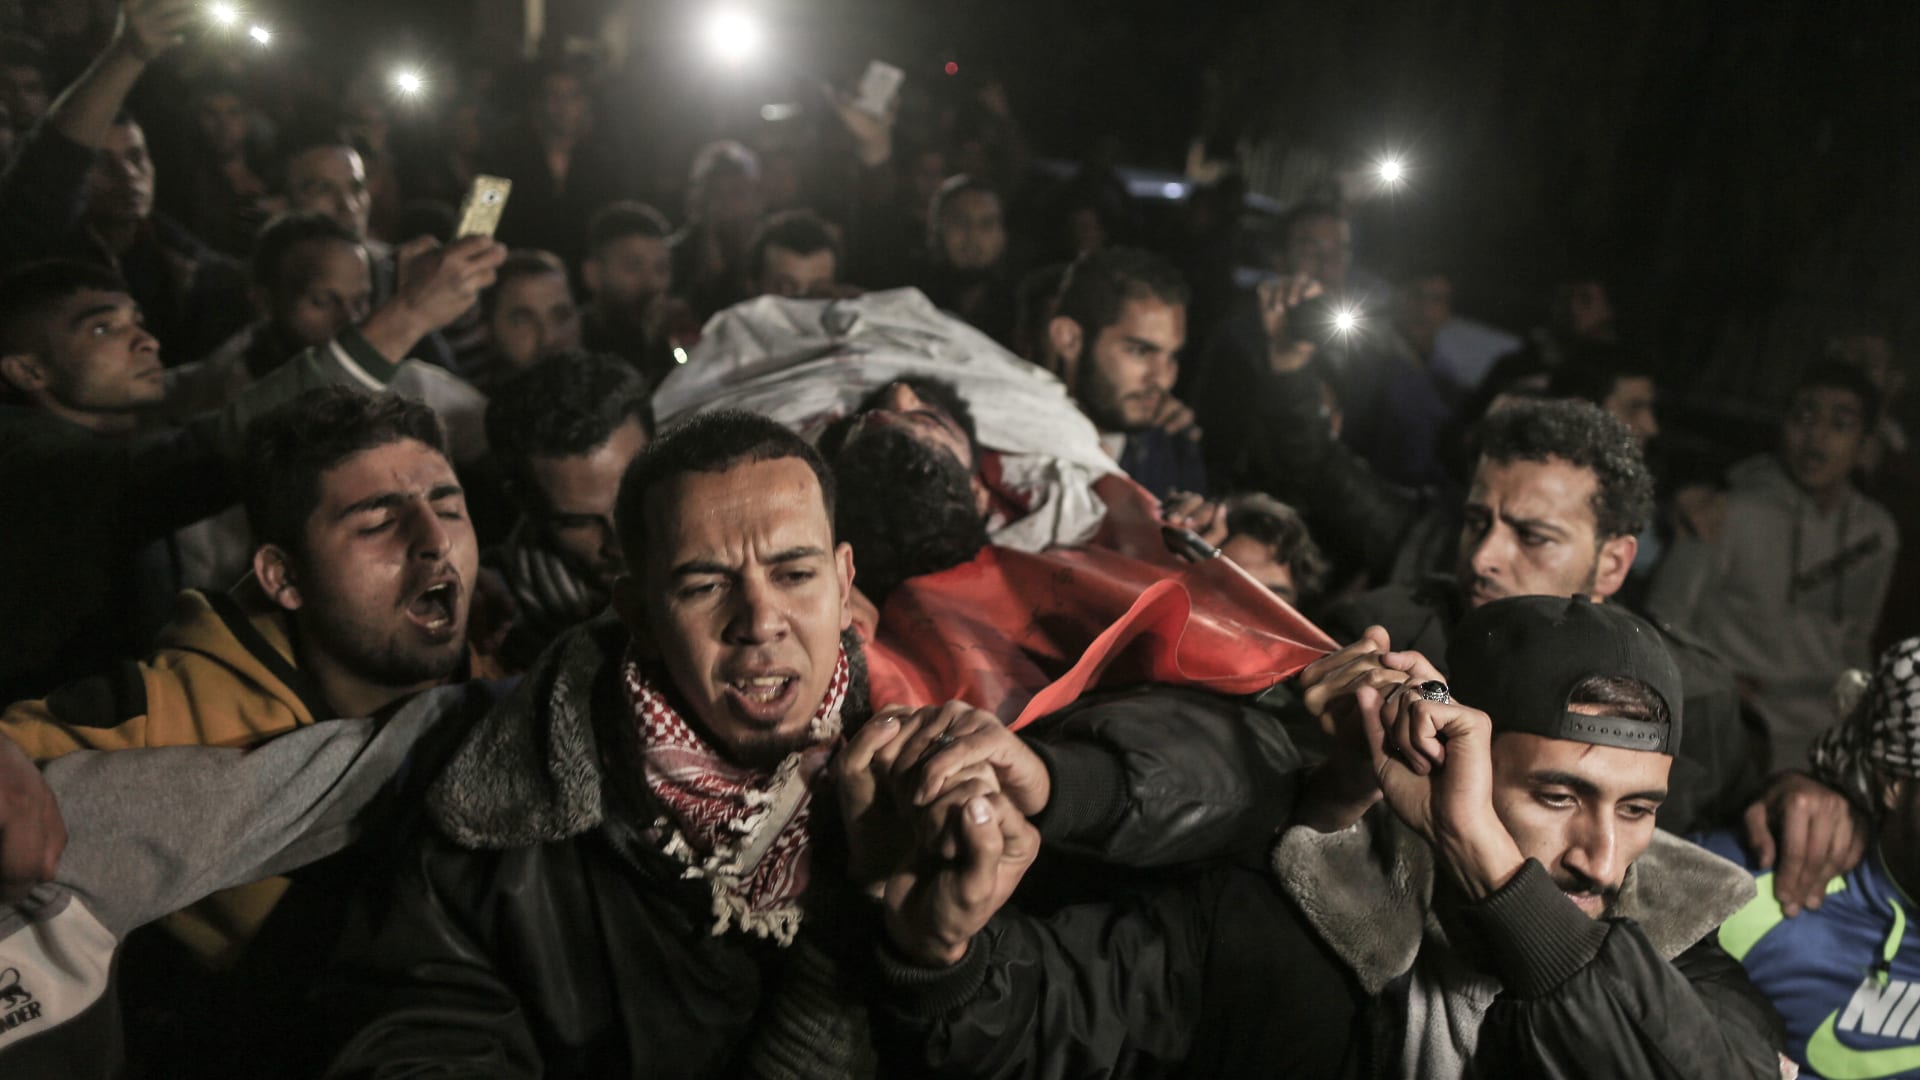 فقد ساقيه في غارة قبل 10 سنوات.. فلسطينيون يشيعون أبوثريا بعد مقتله برصاصة في رأسه 